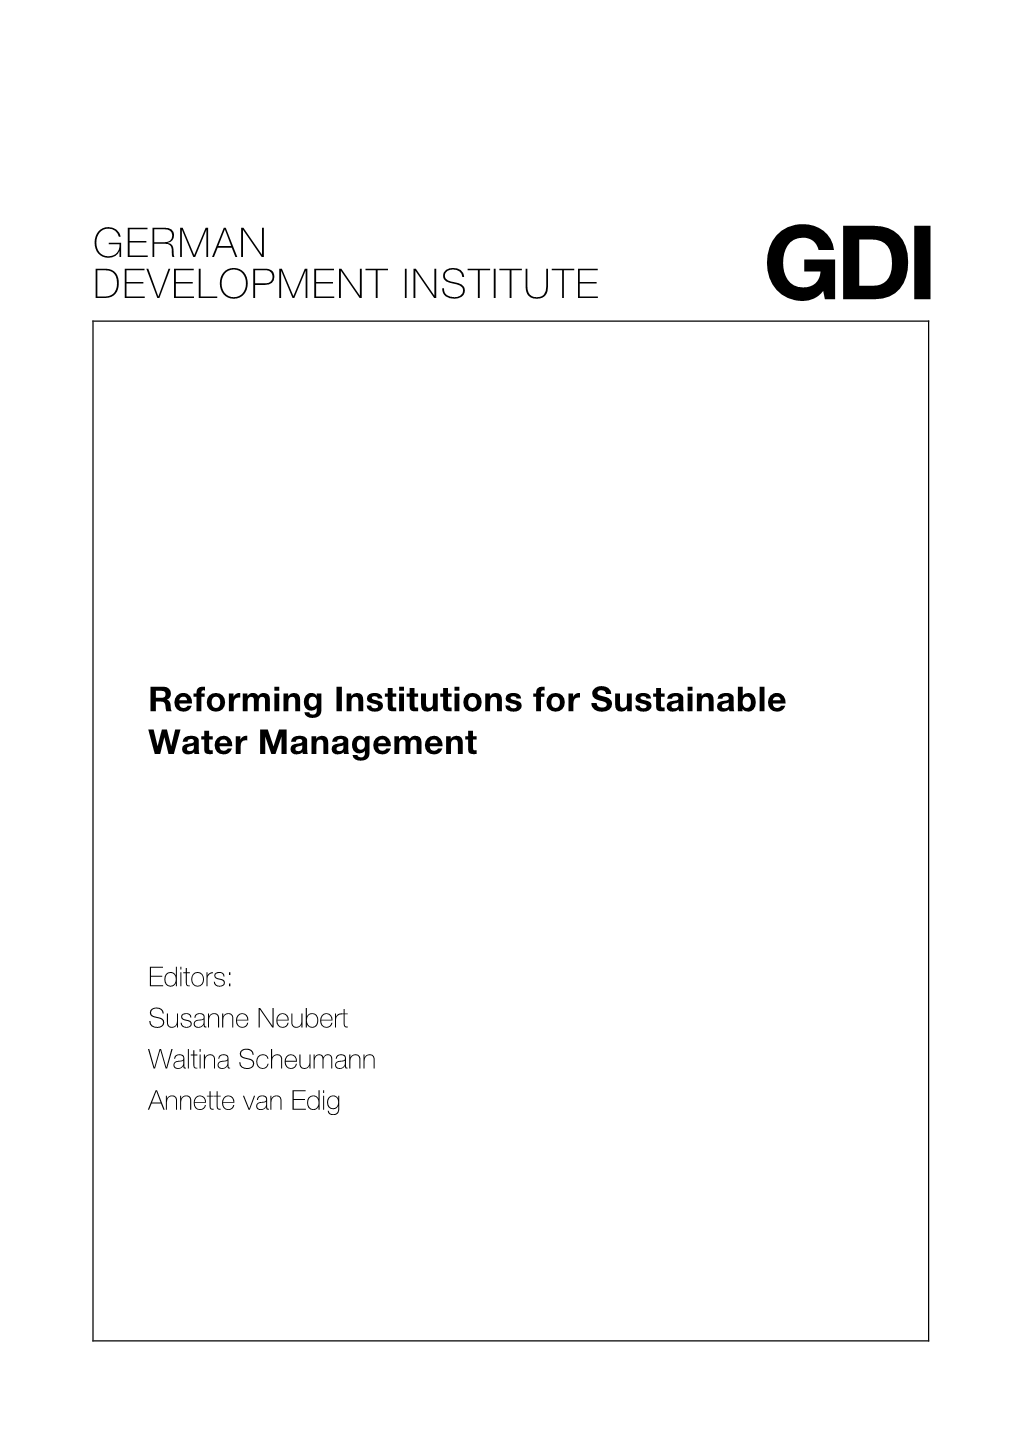 German Development Institute Gdi